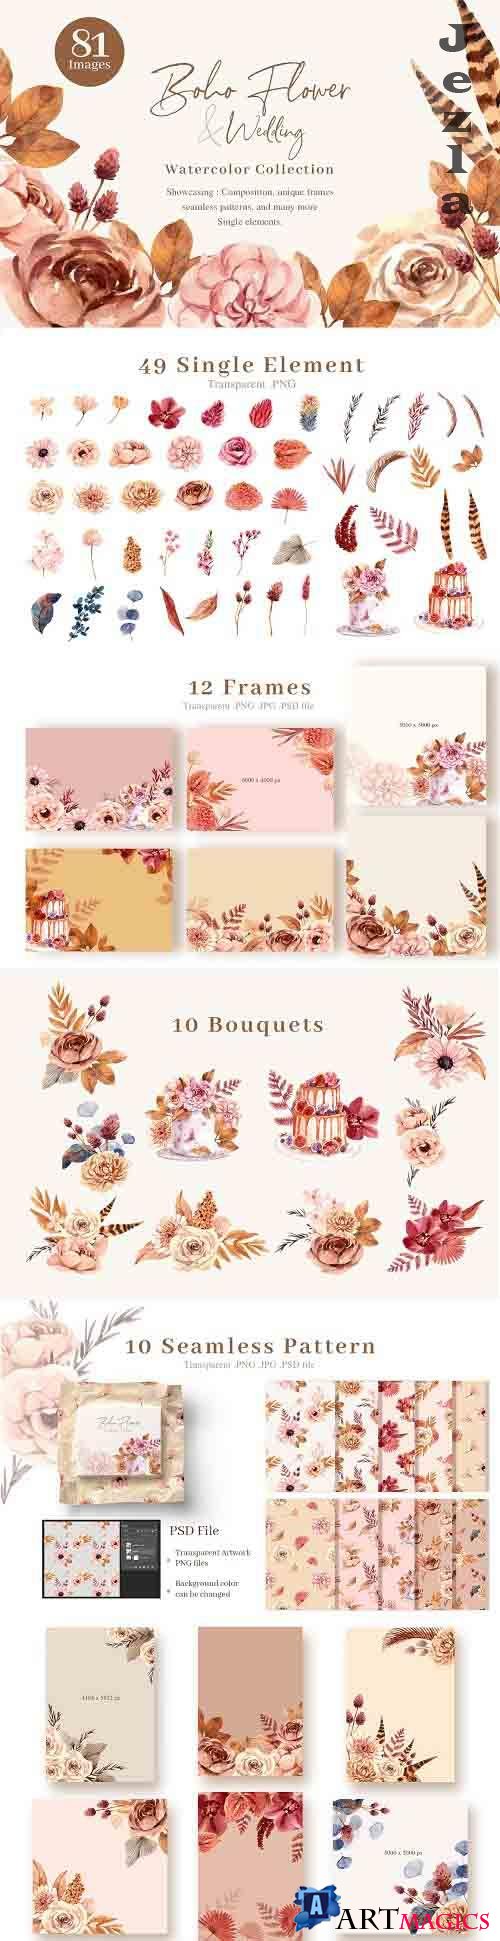 Boho Flowers & Wedding decoration - 5969105